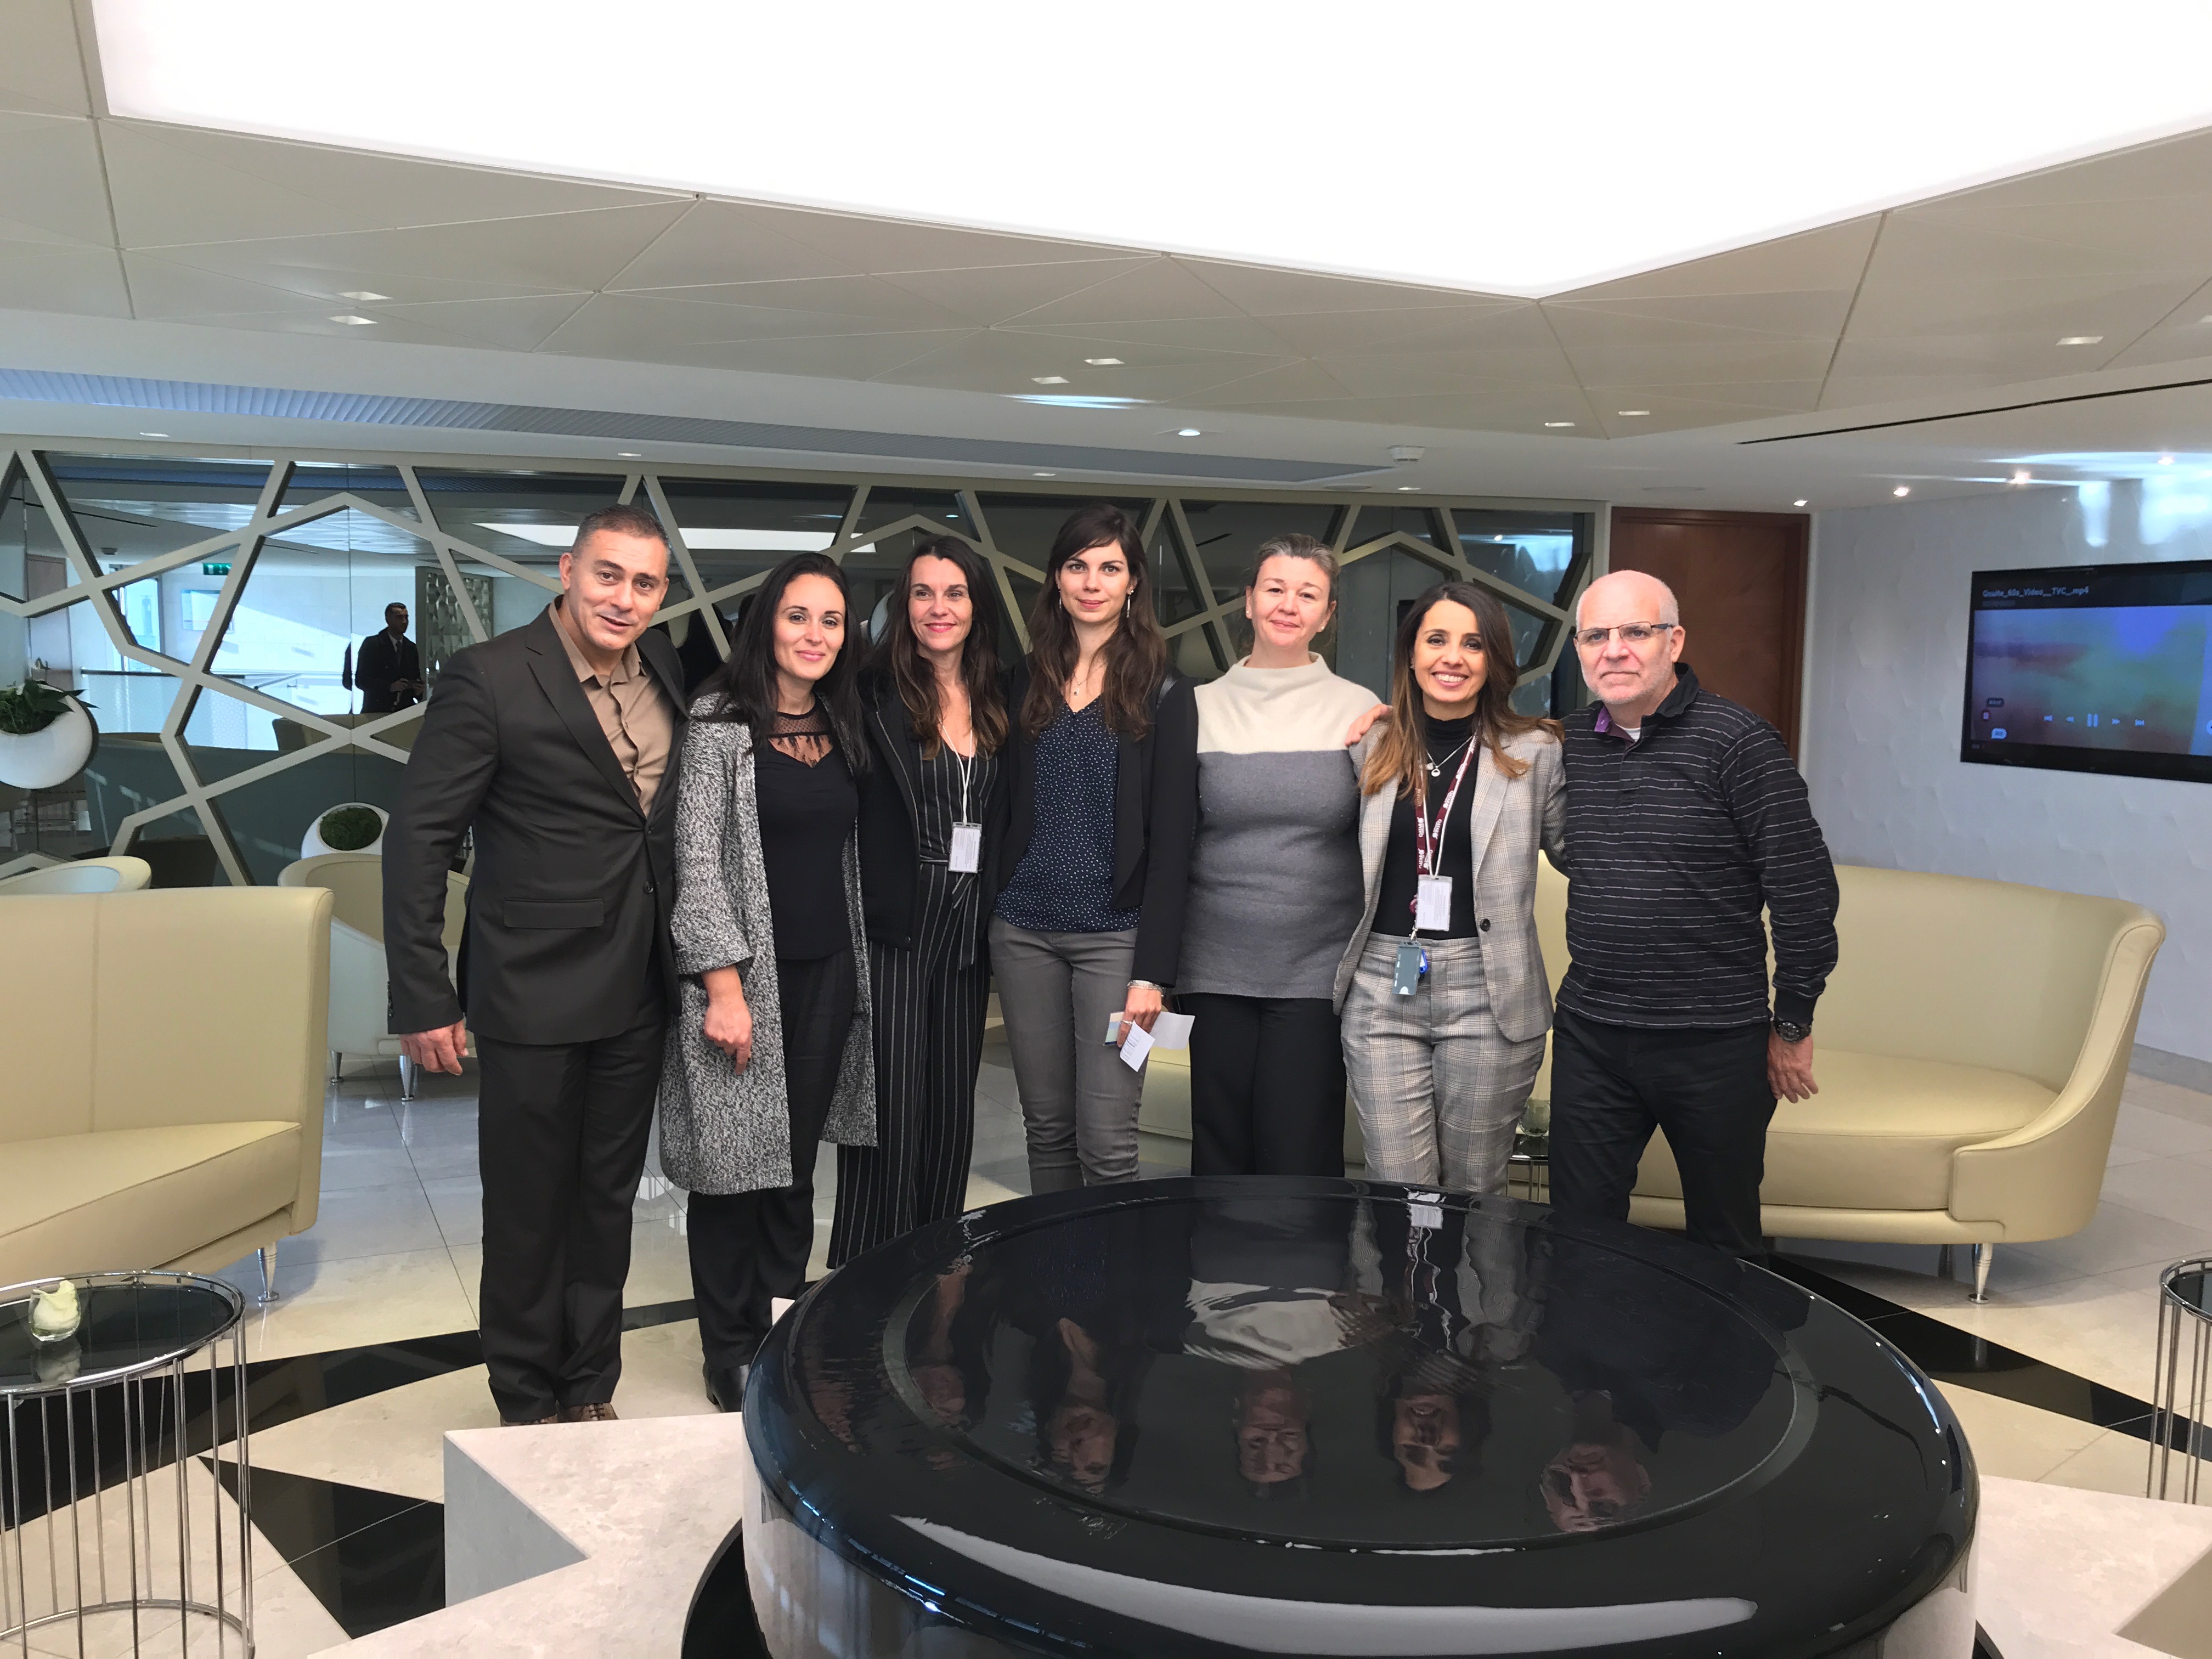 Accompagnés par Nadia Khoulalene, responsable commerciale, six agents de voyages franciliens ont découvert le lounge Qatar Airways de Roissy © PG TM